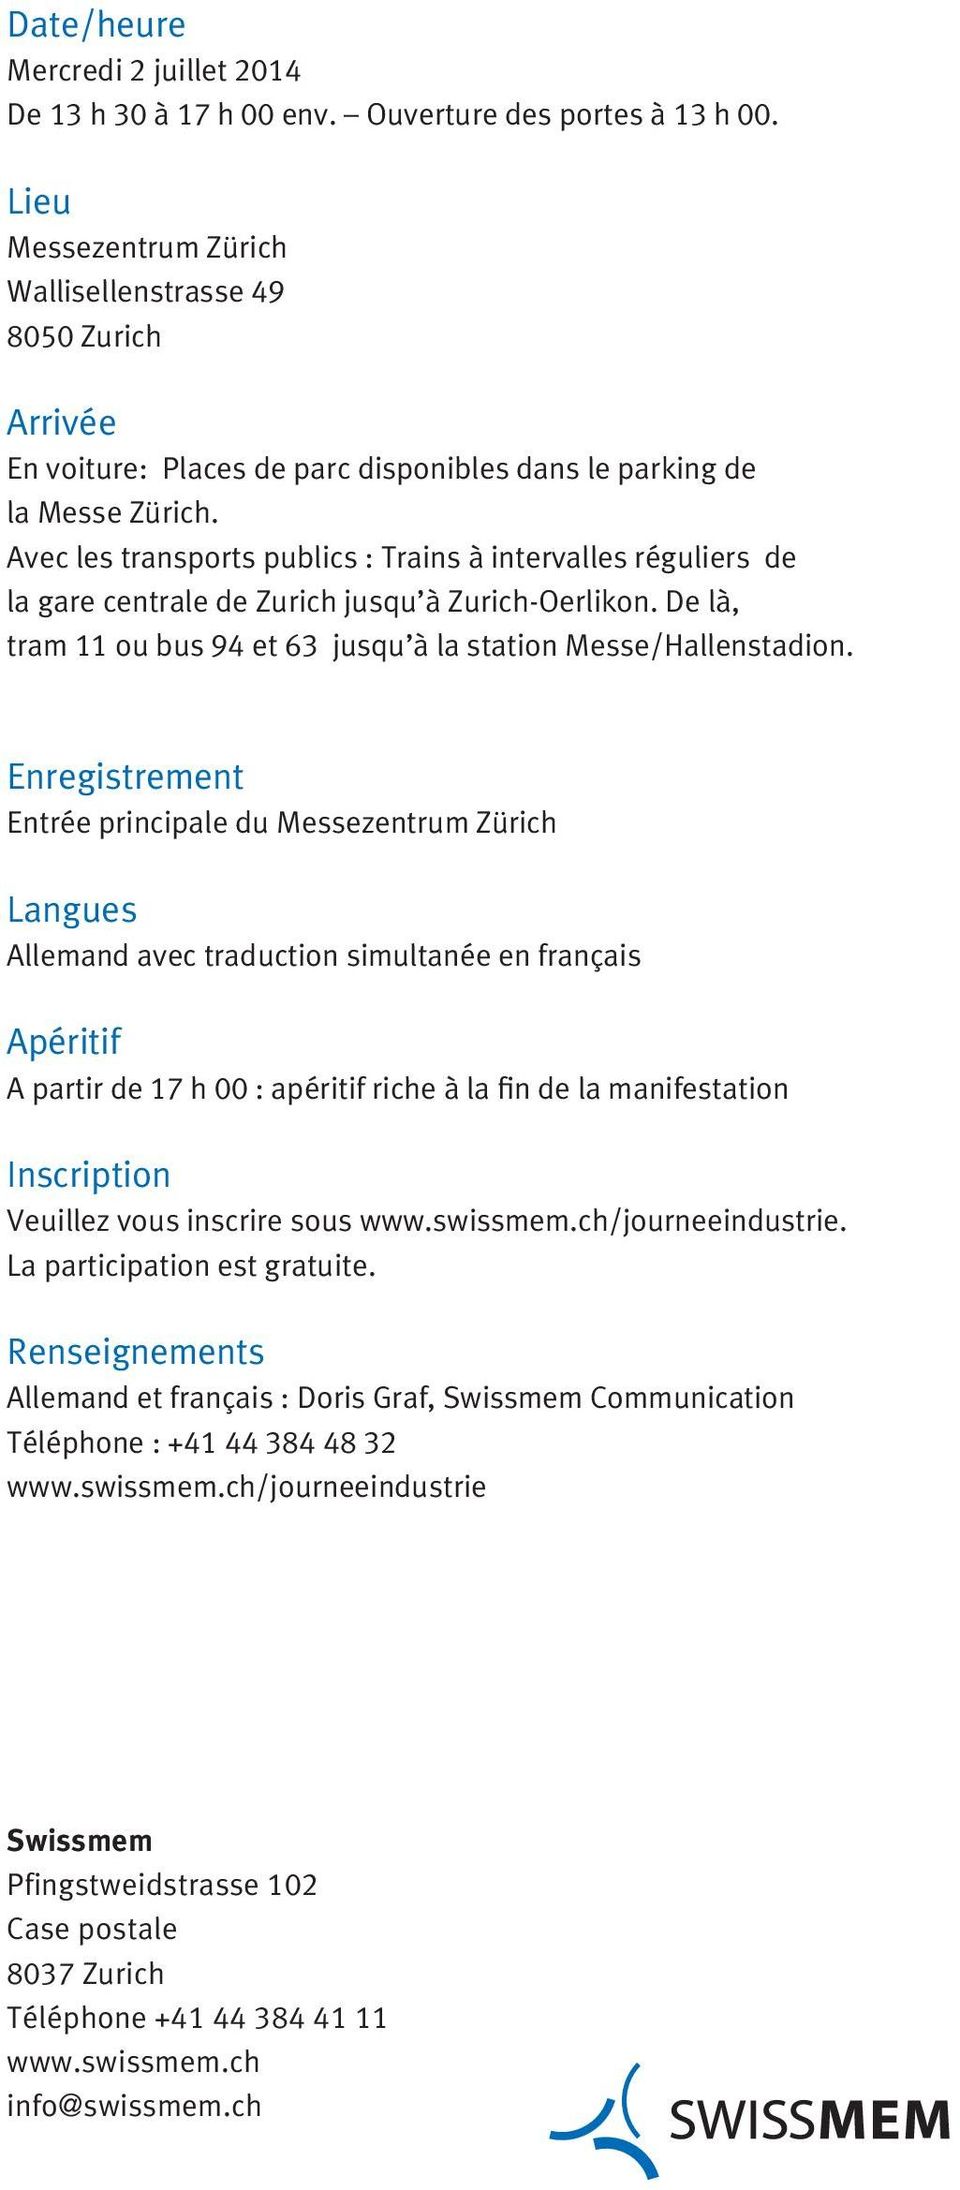 Avec les transports publics : Trains à intervalles réguliers de la gare centrale de Zurich jusqu à Zurich-Oerlikon. De là, tram 11 ou bus 94 et 63 jusqu à la station Messe/Hallenstadion.